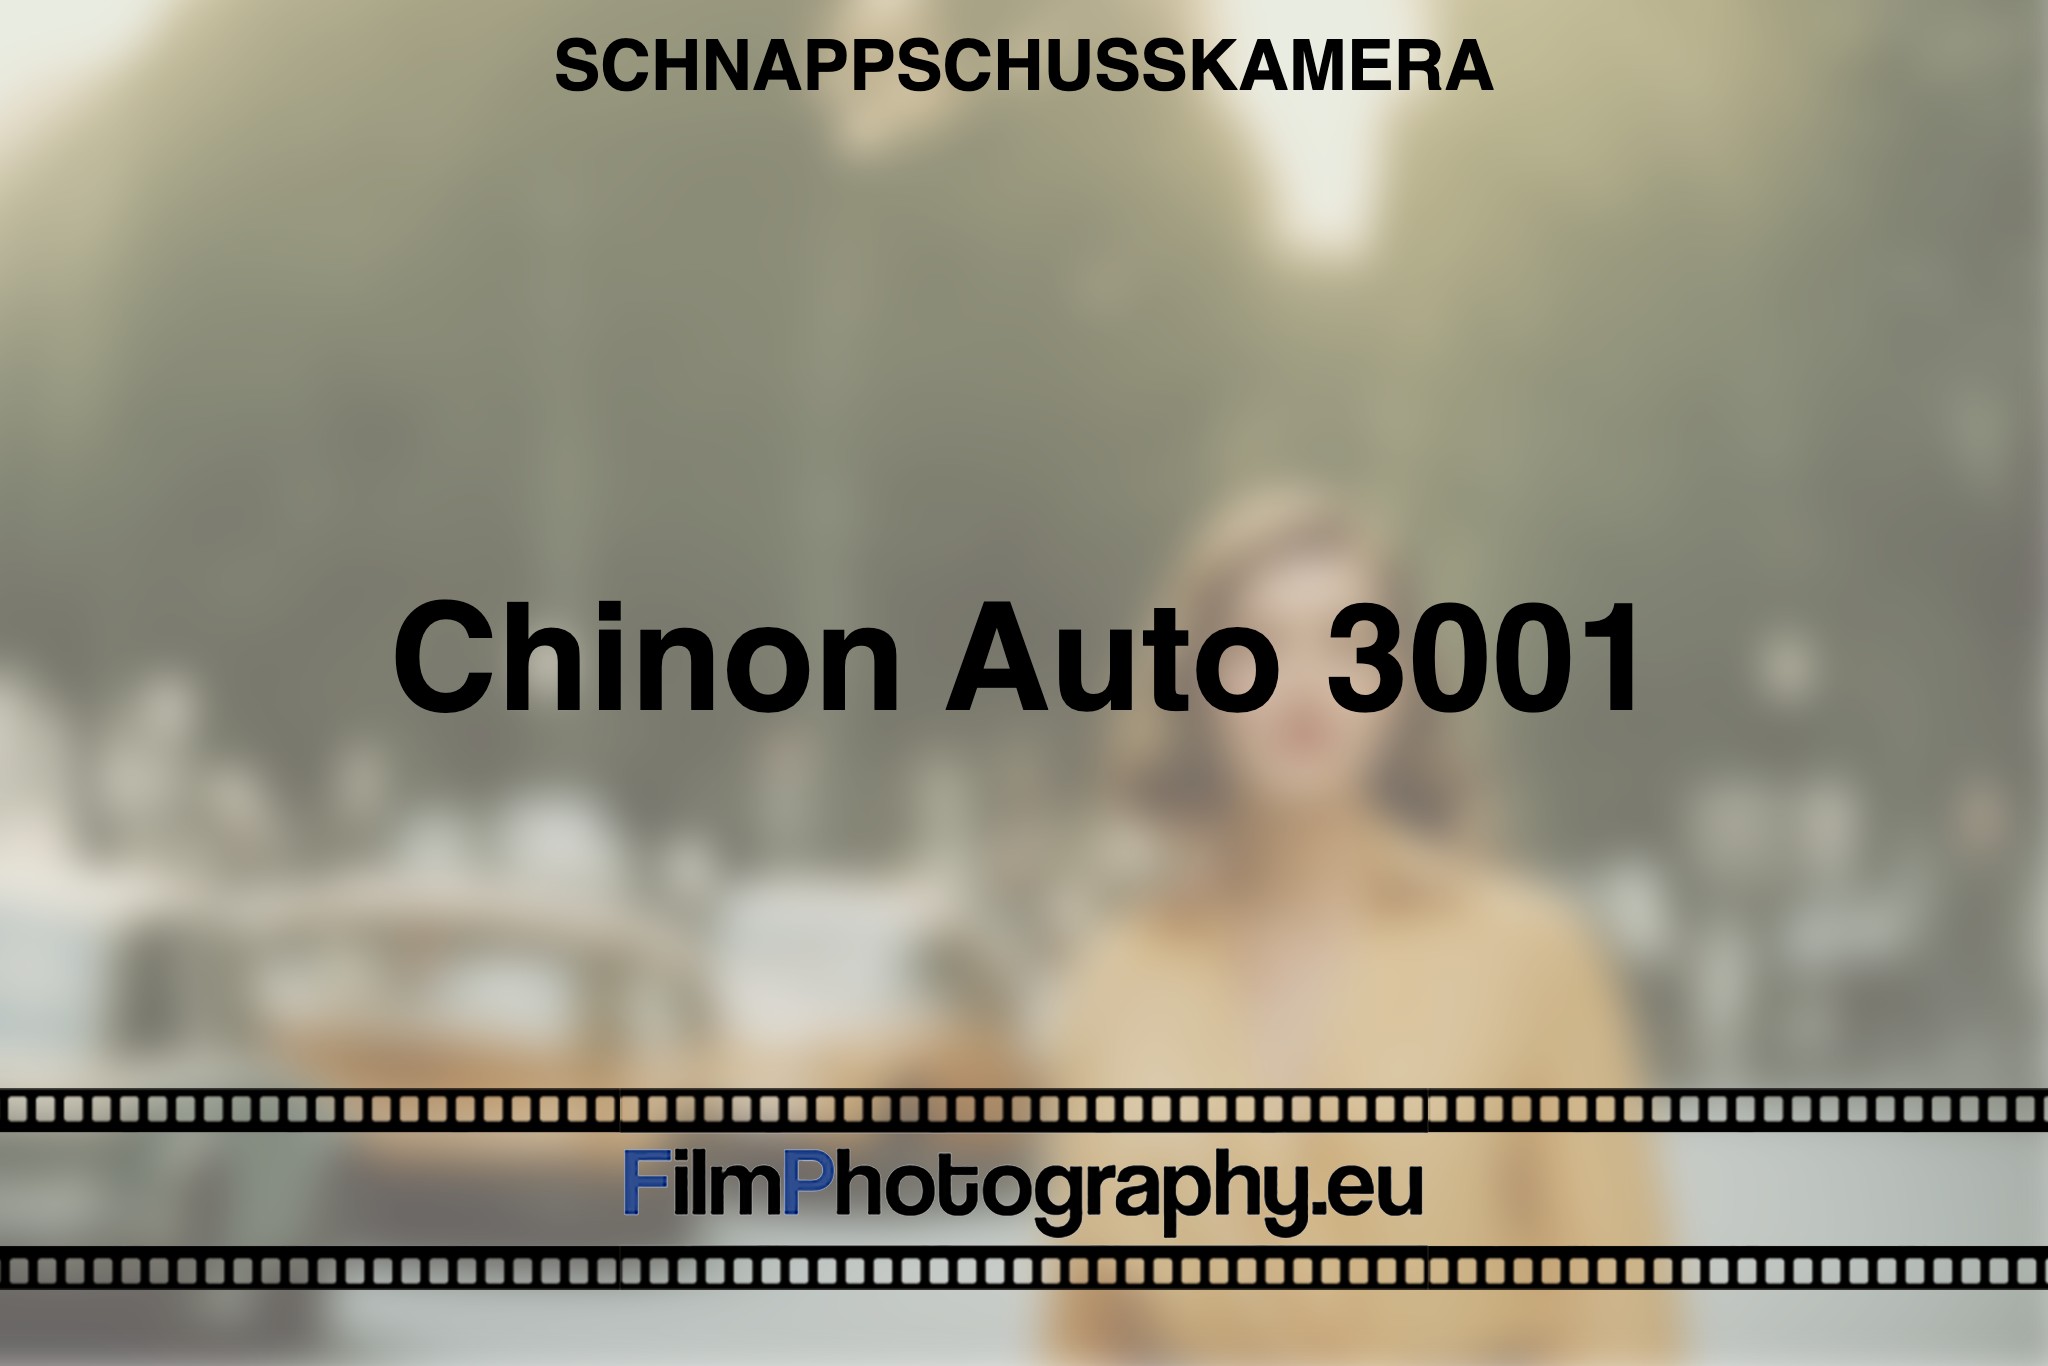 chinon-auto-3001-schnappschusskamera-bnv